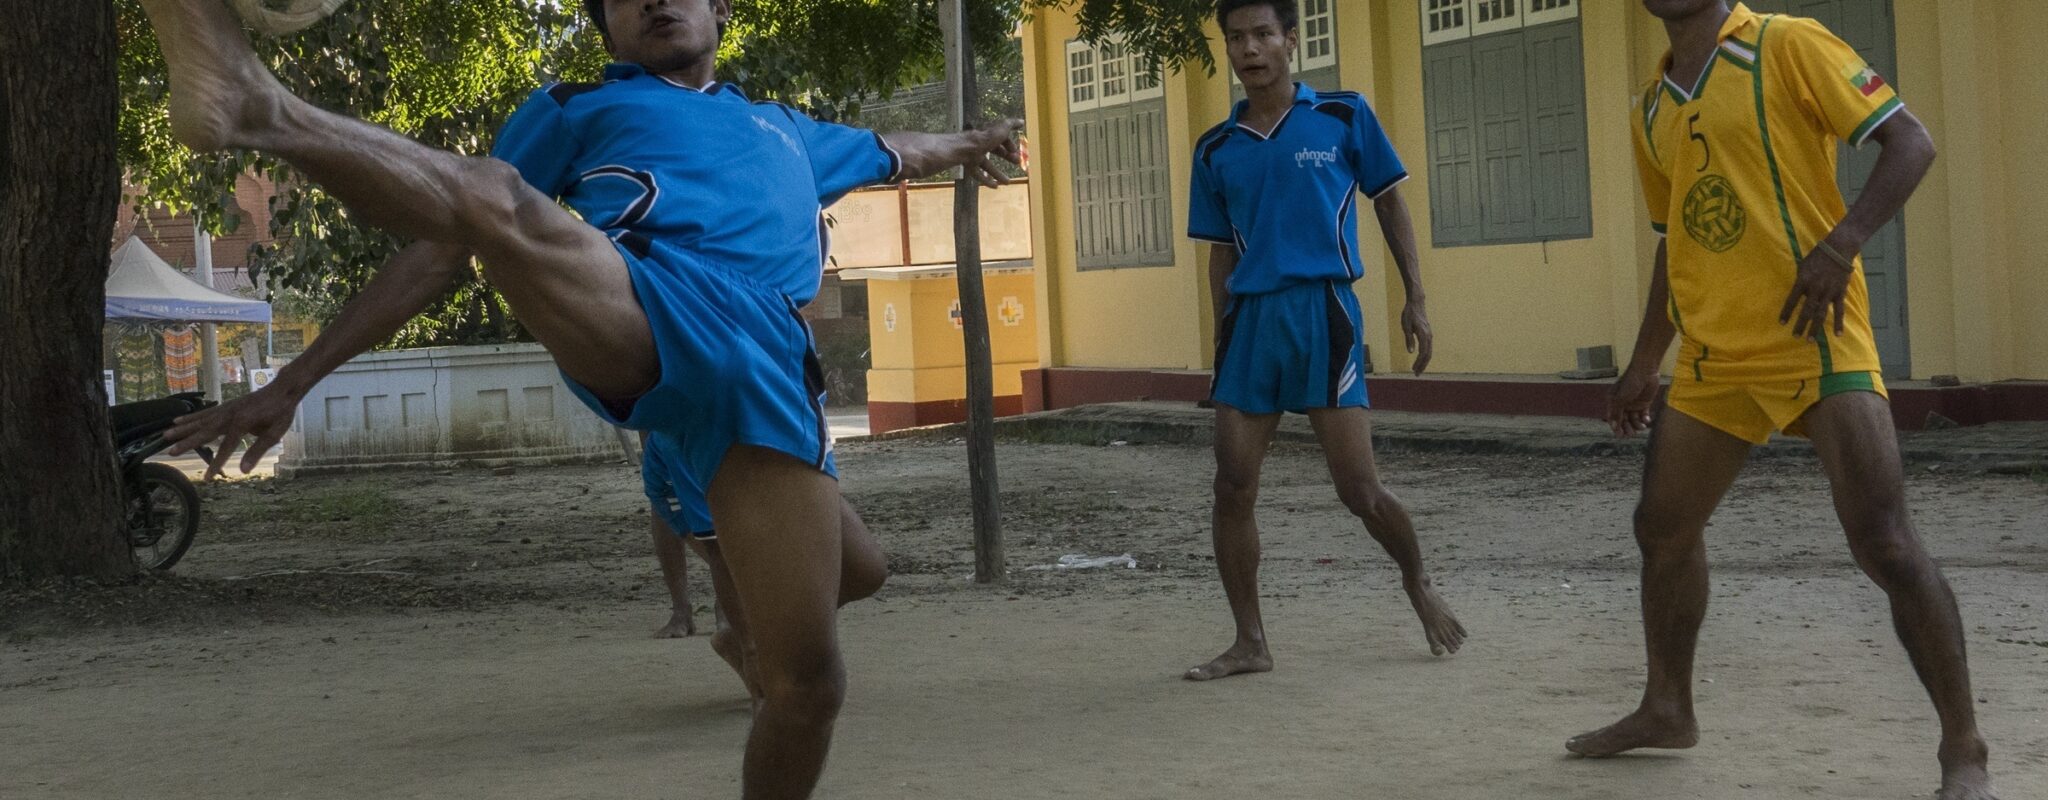 Men playing chinlone in Burma